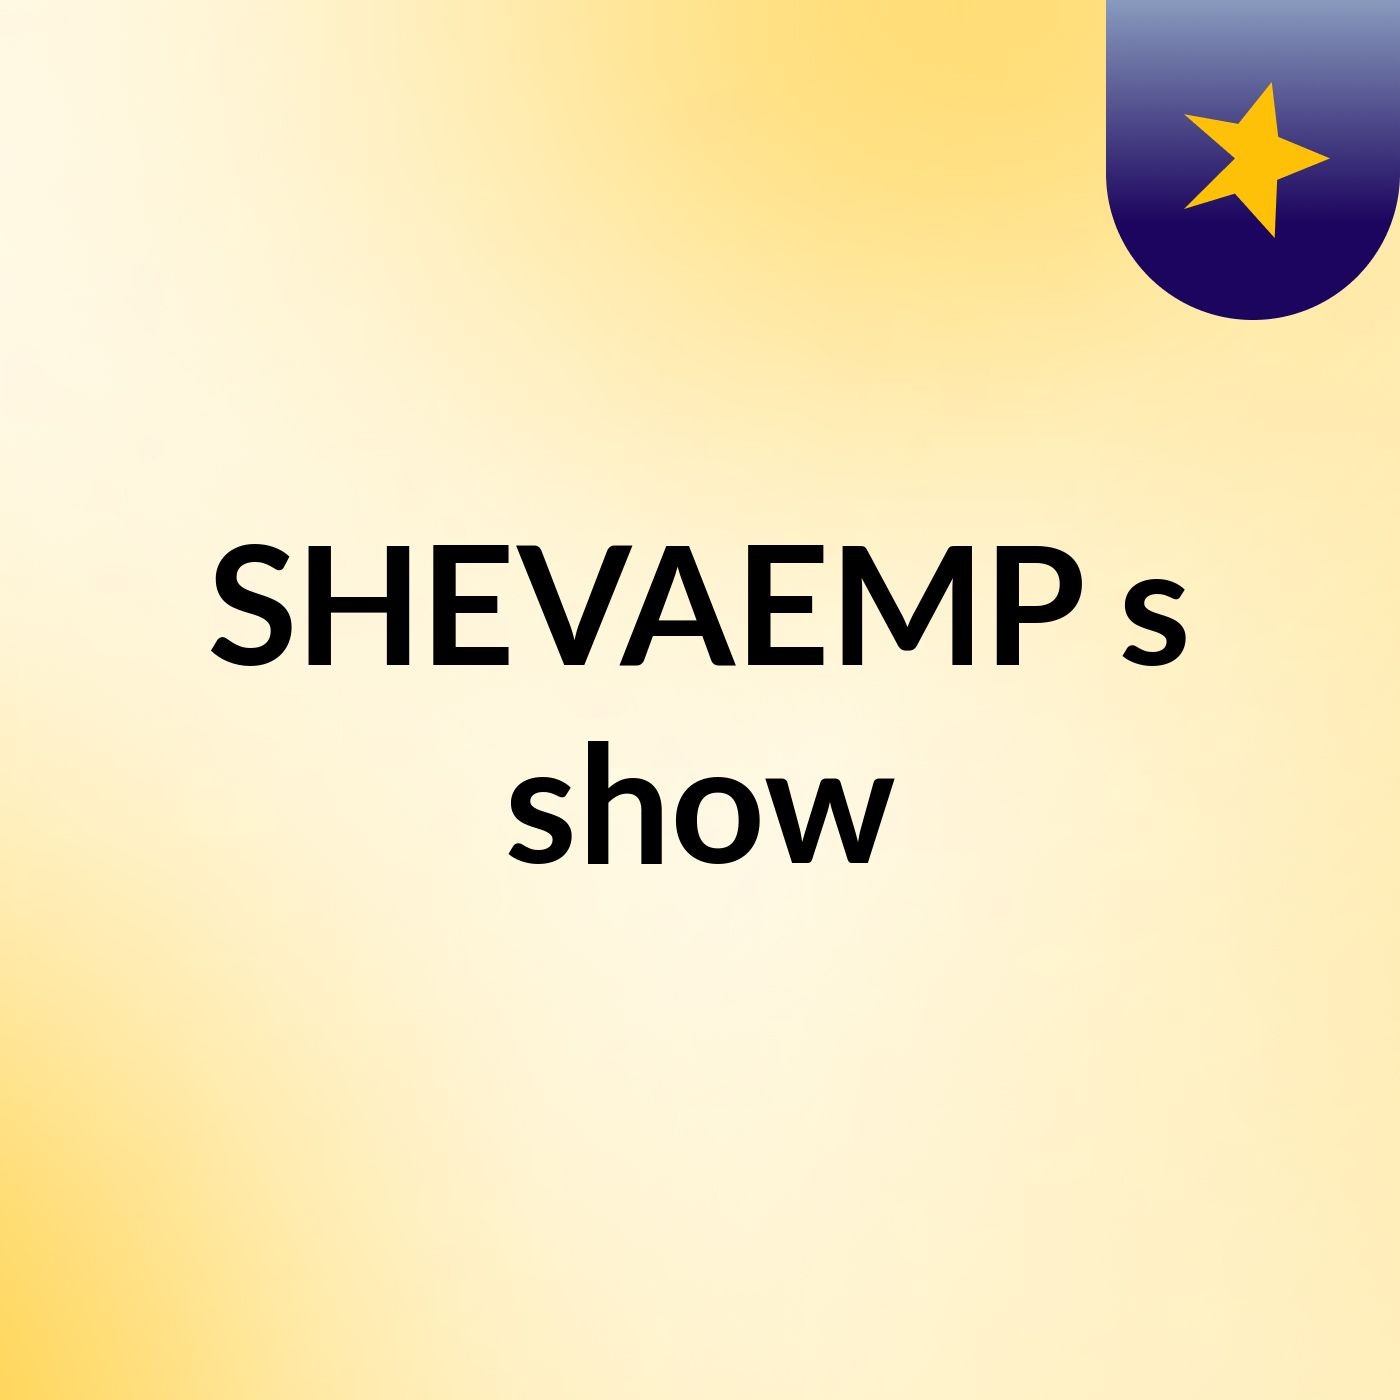 SHEVAEMP's show